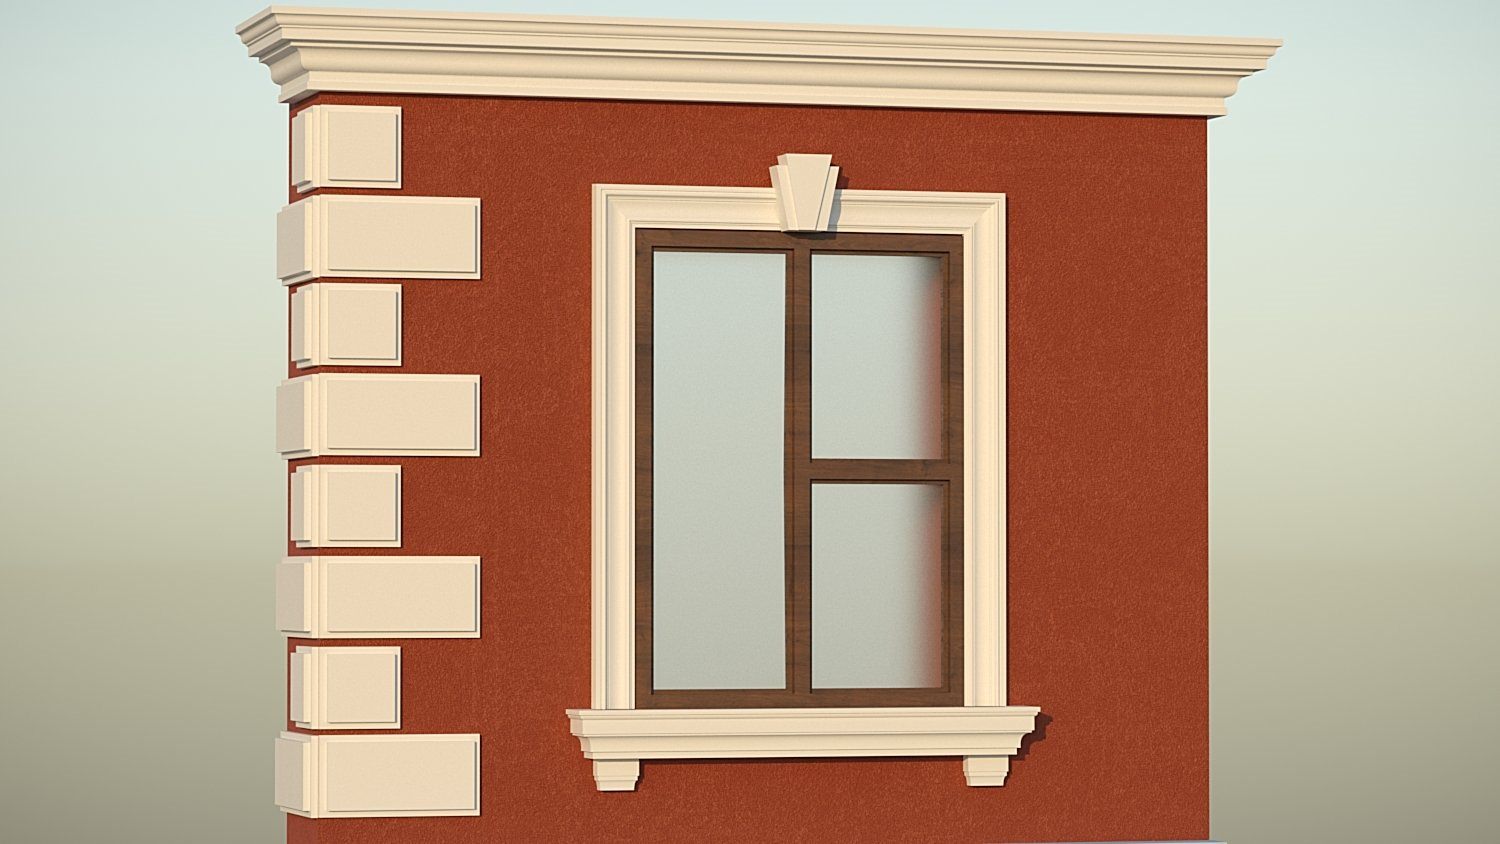 Фасадный декор обрамление окон | Смотреть 45 идеи на фото бесплатно